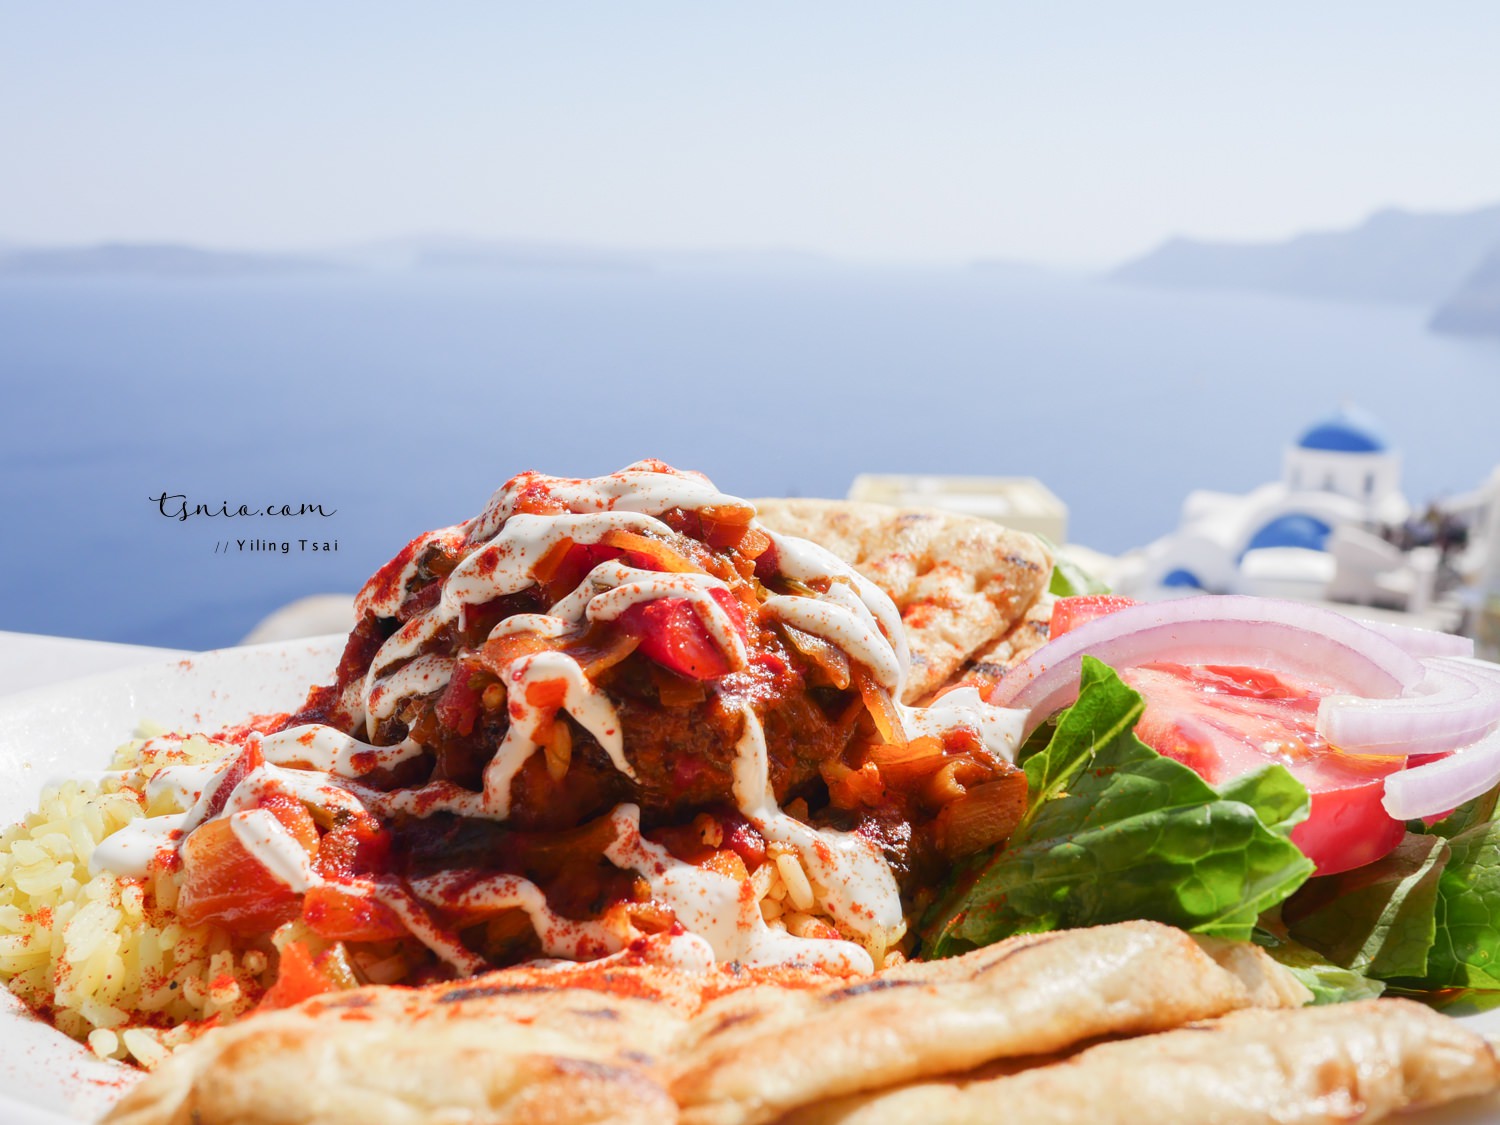 希臘聖托里尼伊亞美食推薦 Lotza Restaurant 超美愛情海景觀餐廳